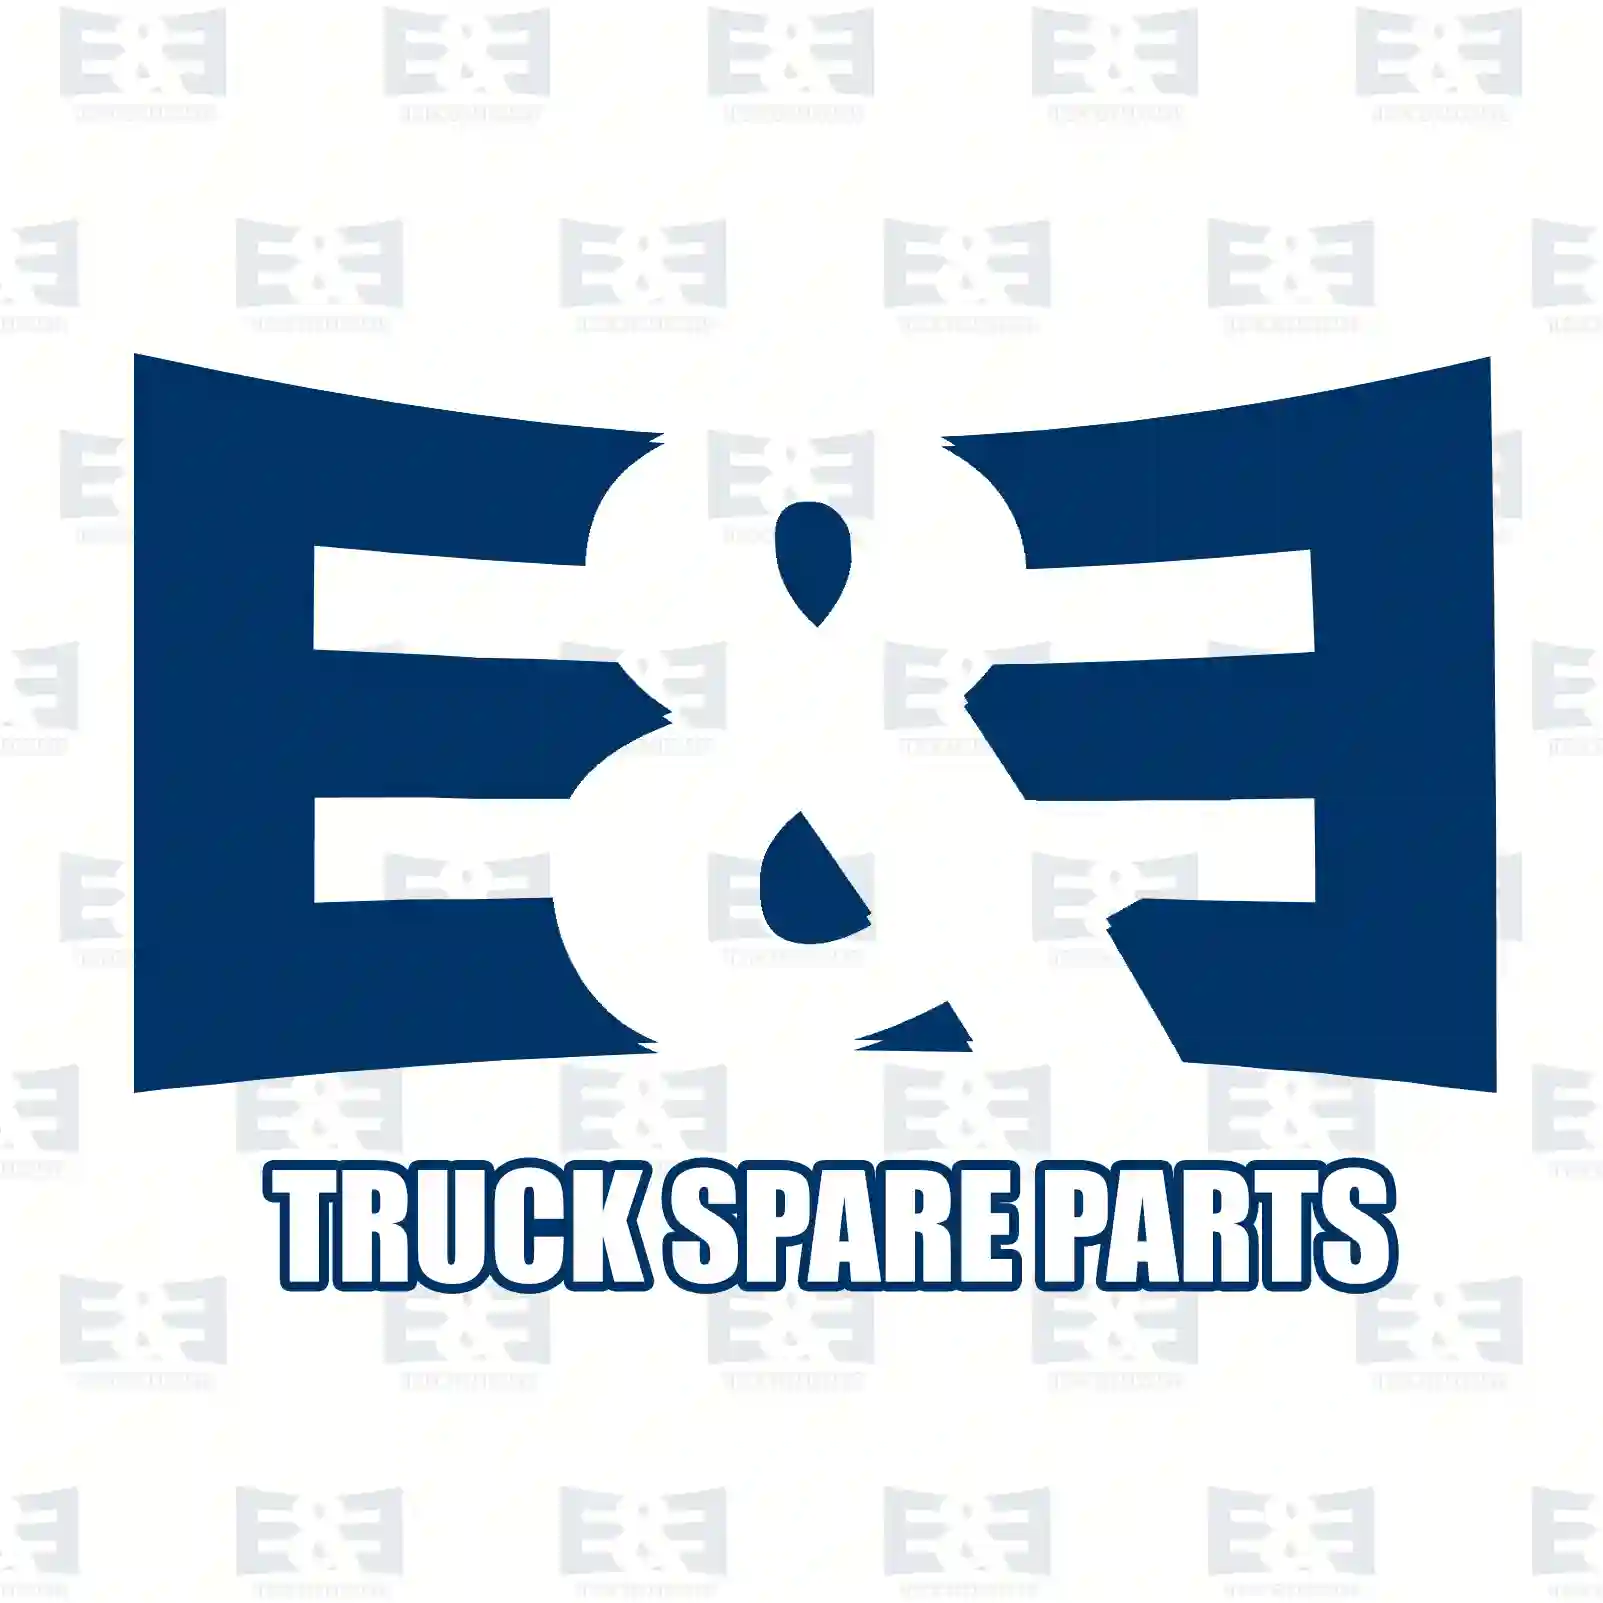 End pipe, 2E2204123, 1114159 ||  2E2204123 E&E Truck Spare Parts | Truck Spare Parts, Auotomotive Spare Parts End pipe, 2E2204123, 1114159 ||  2E2204123 E&E Truck Spare Parts | Truck Spare Parts, Auotomotive Spare Parts